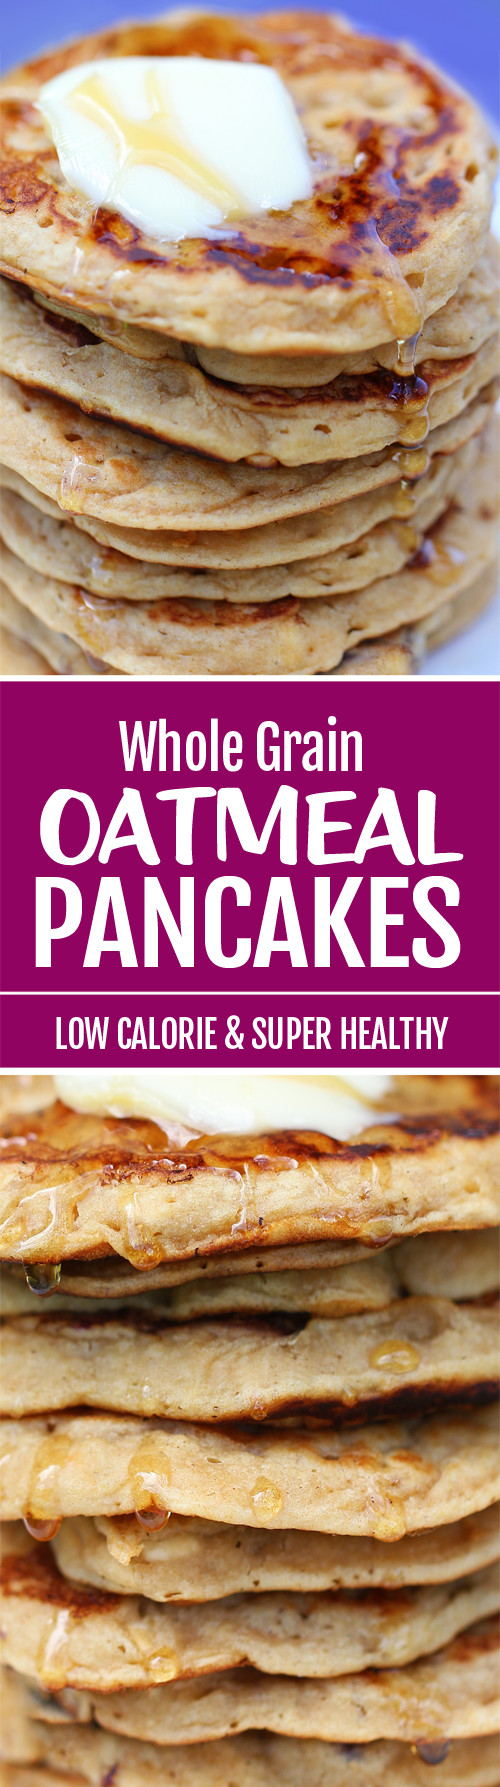 Oatmeal Pancakes Healthy
 Oatmeal Pancakes Whole Grain & Healthy